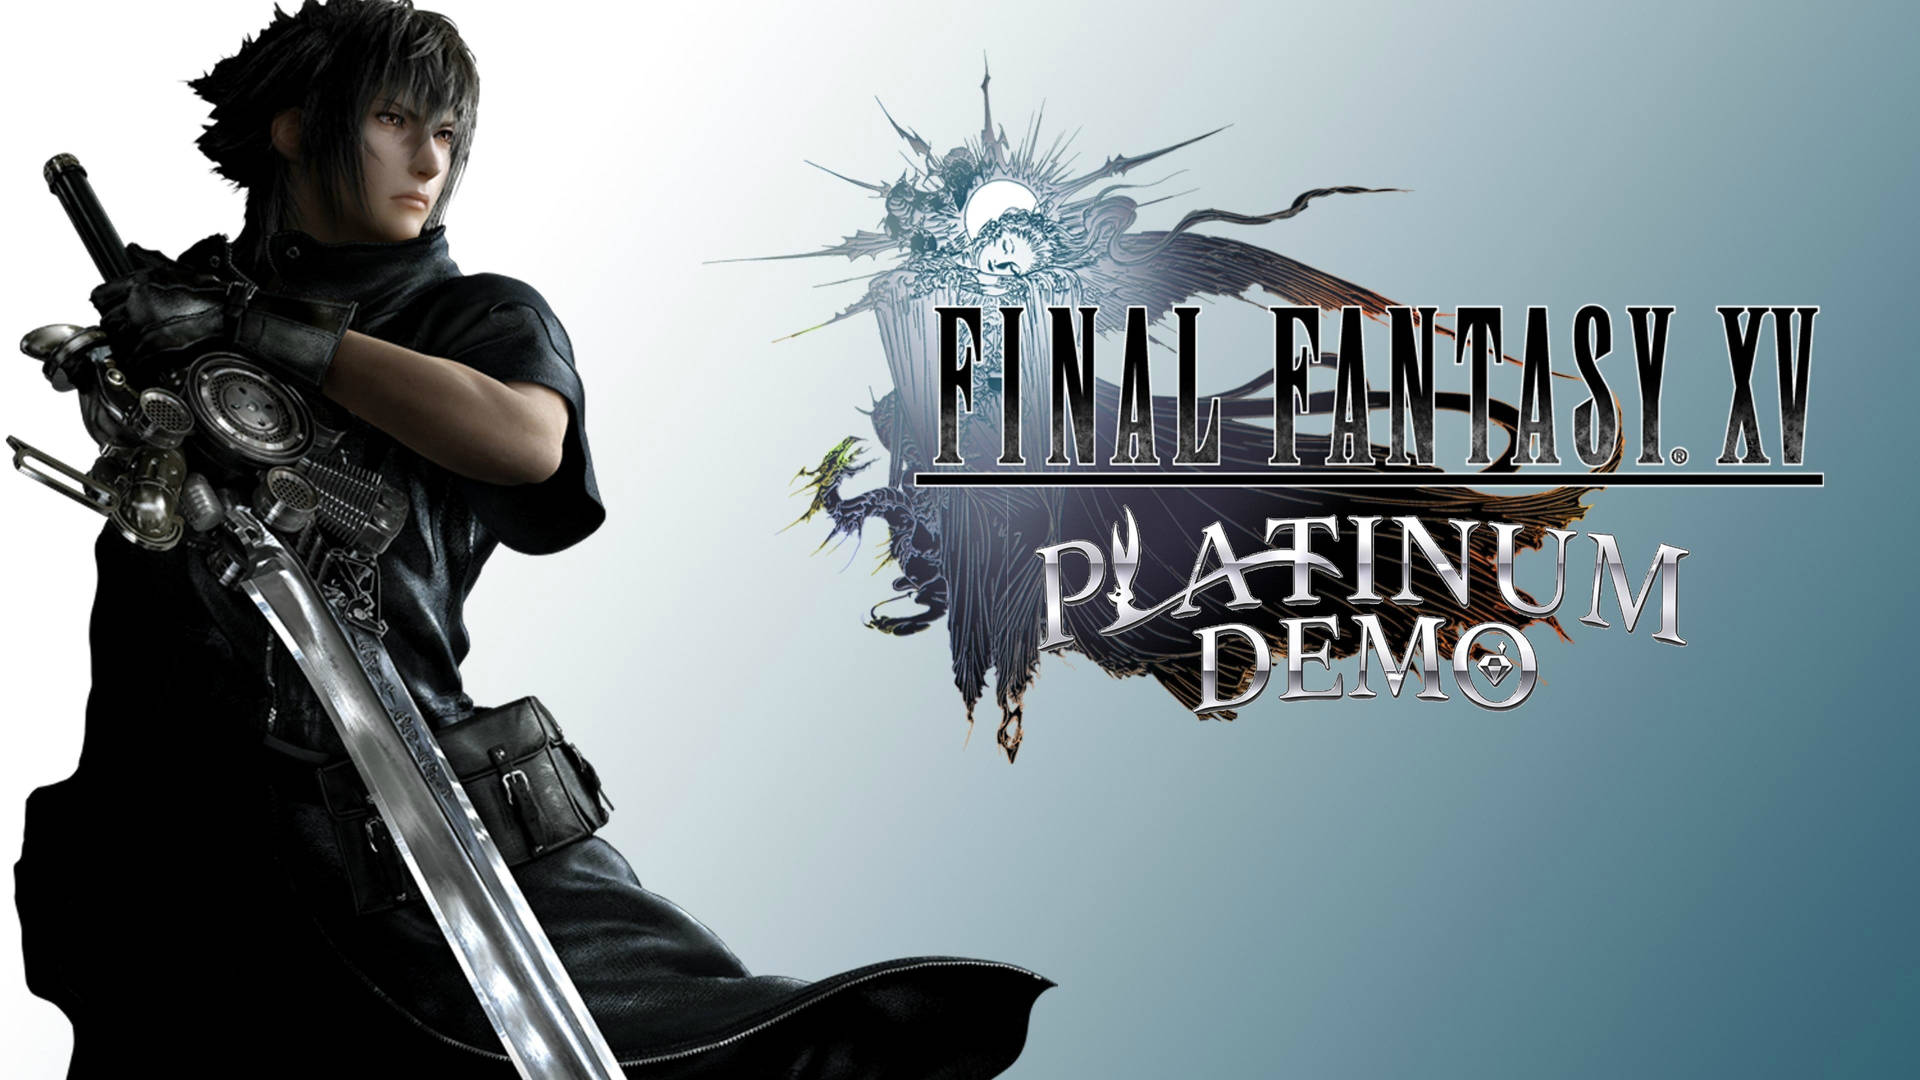 Final Fantasy Xv Platinum Demo Picture